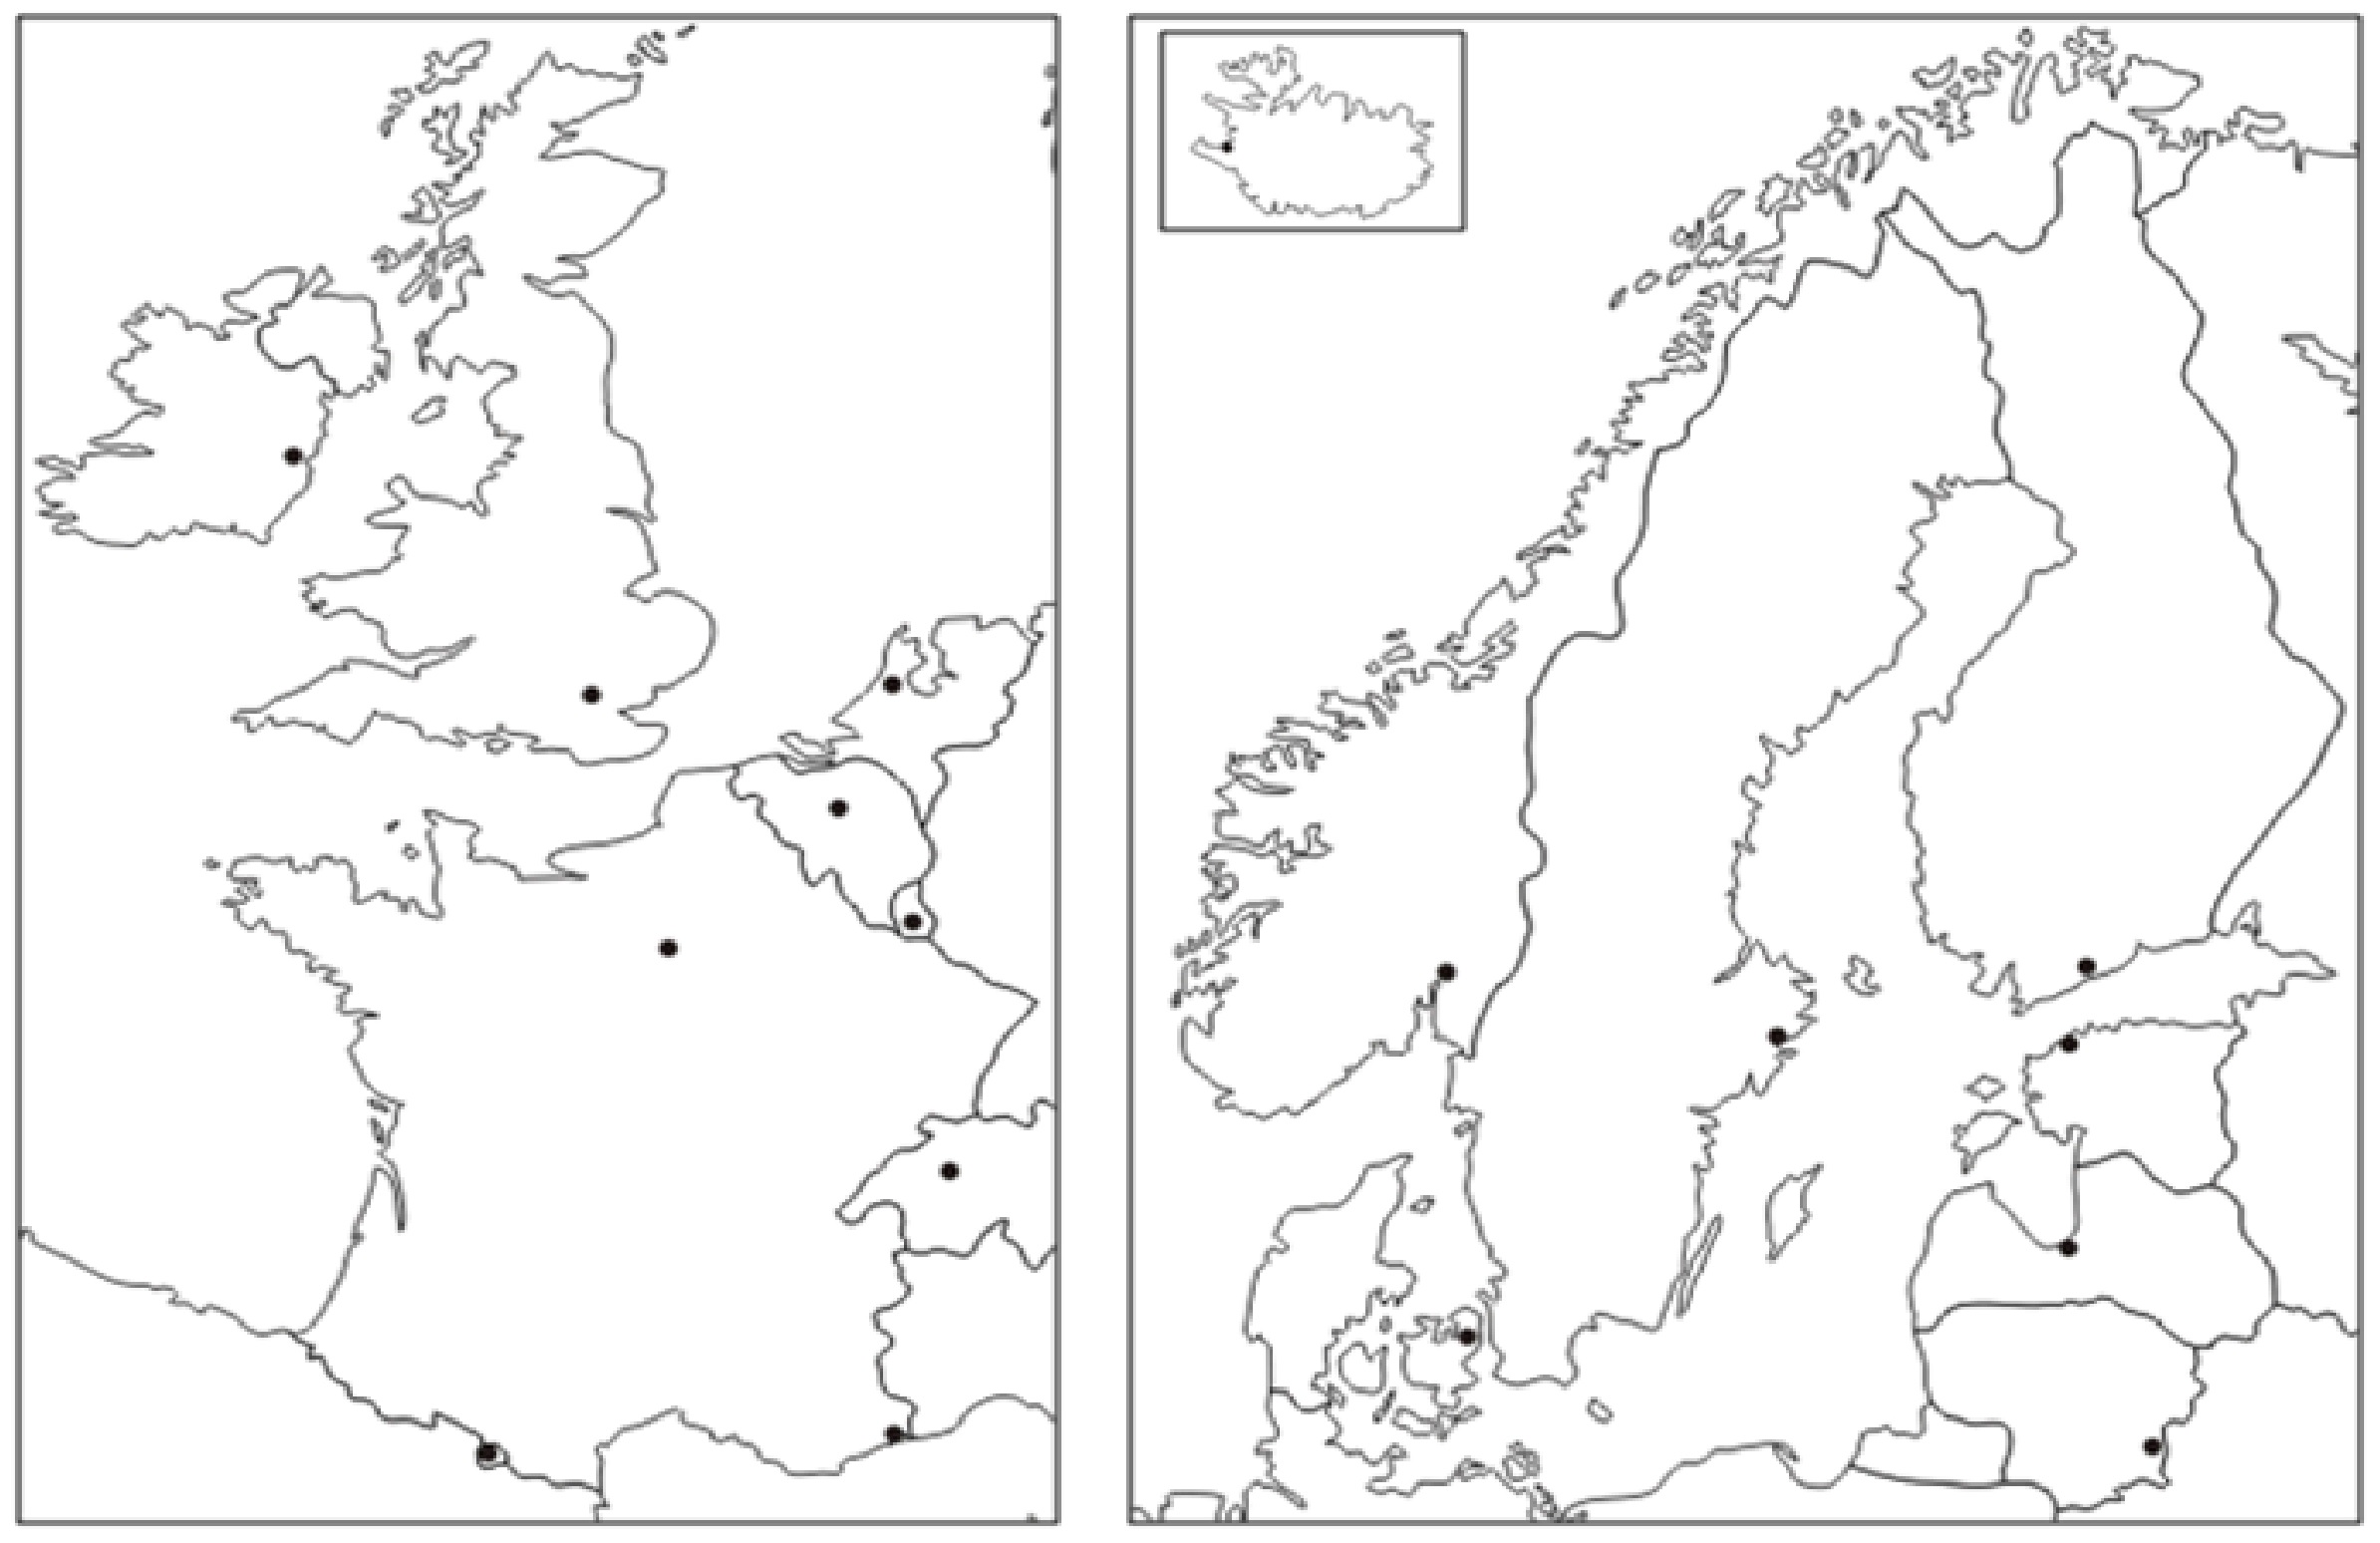 sjeverna europa slijepa karta I. osnovna škola Čakovec   Geografija   slijepa karta Sjeverna Europa sjeverna europa slijepa karta